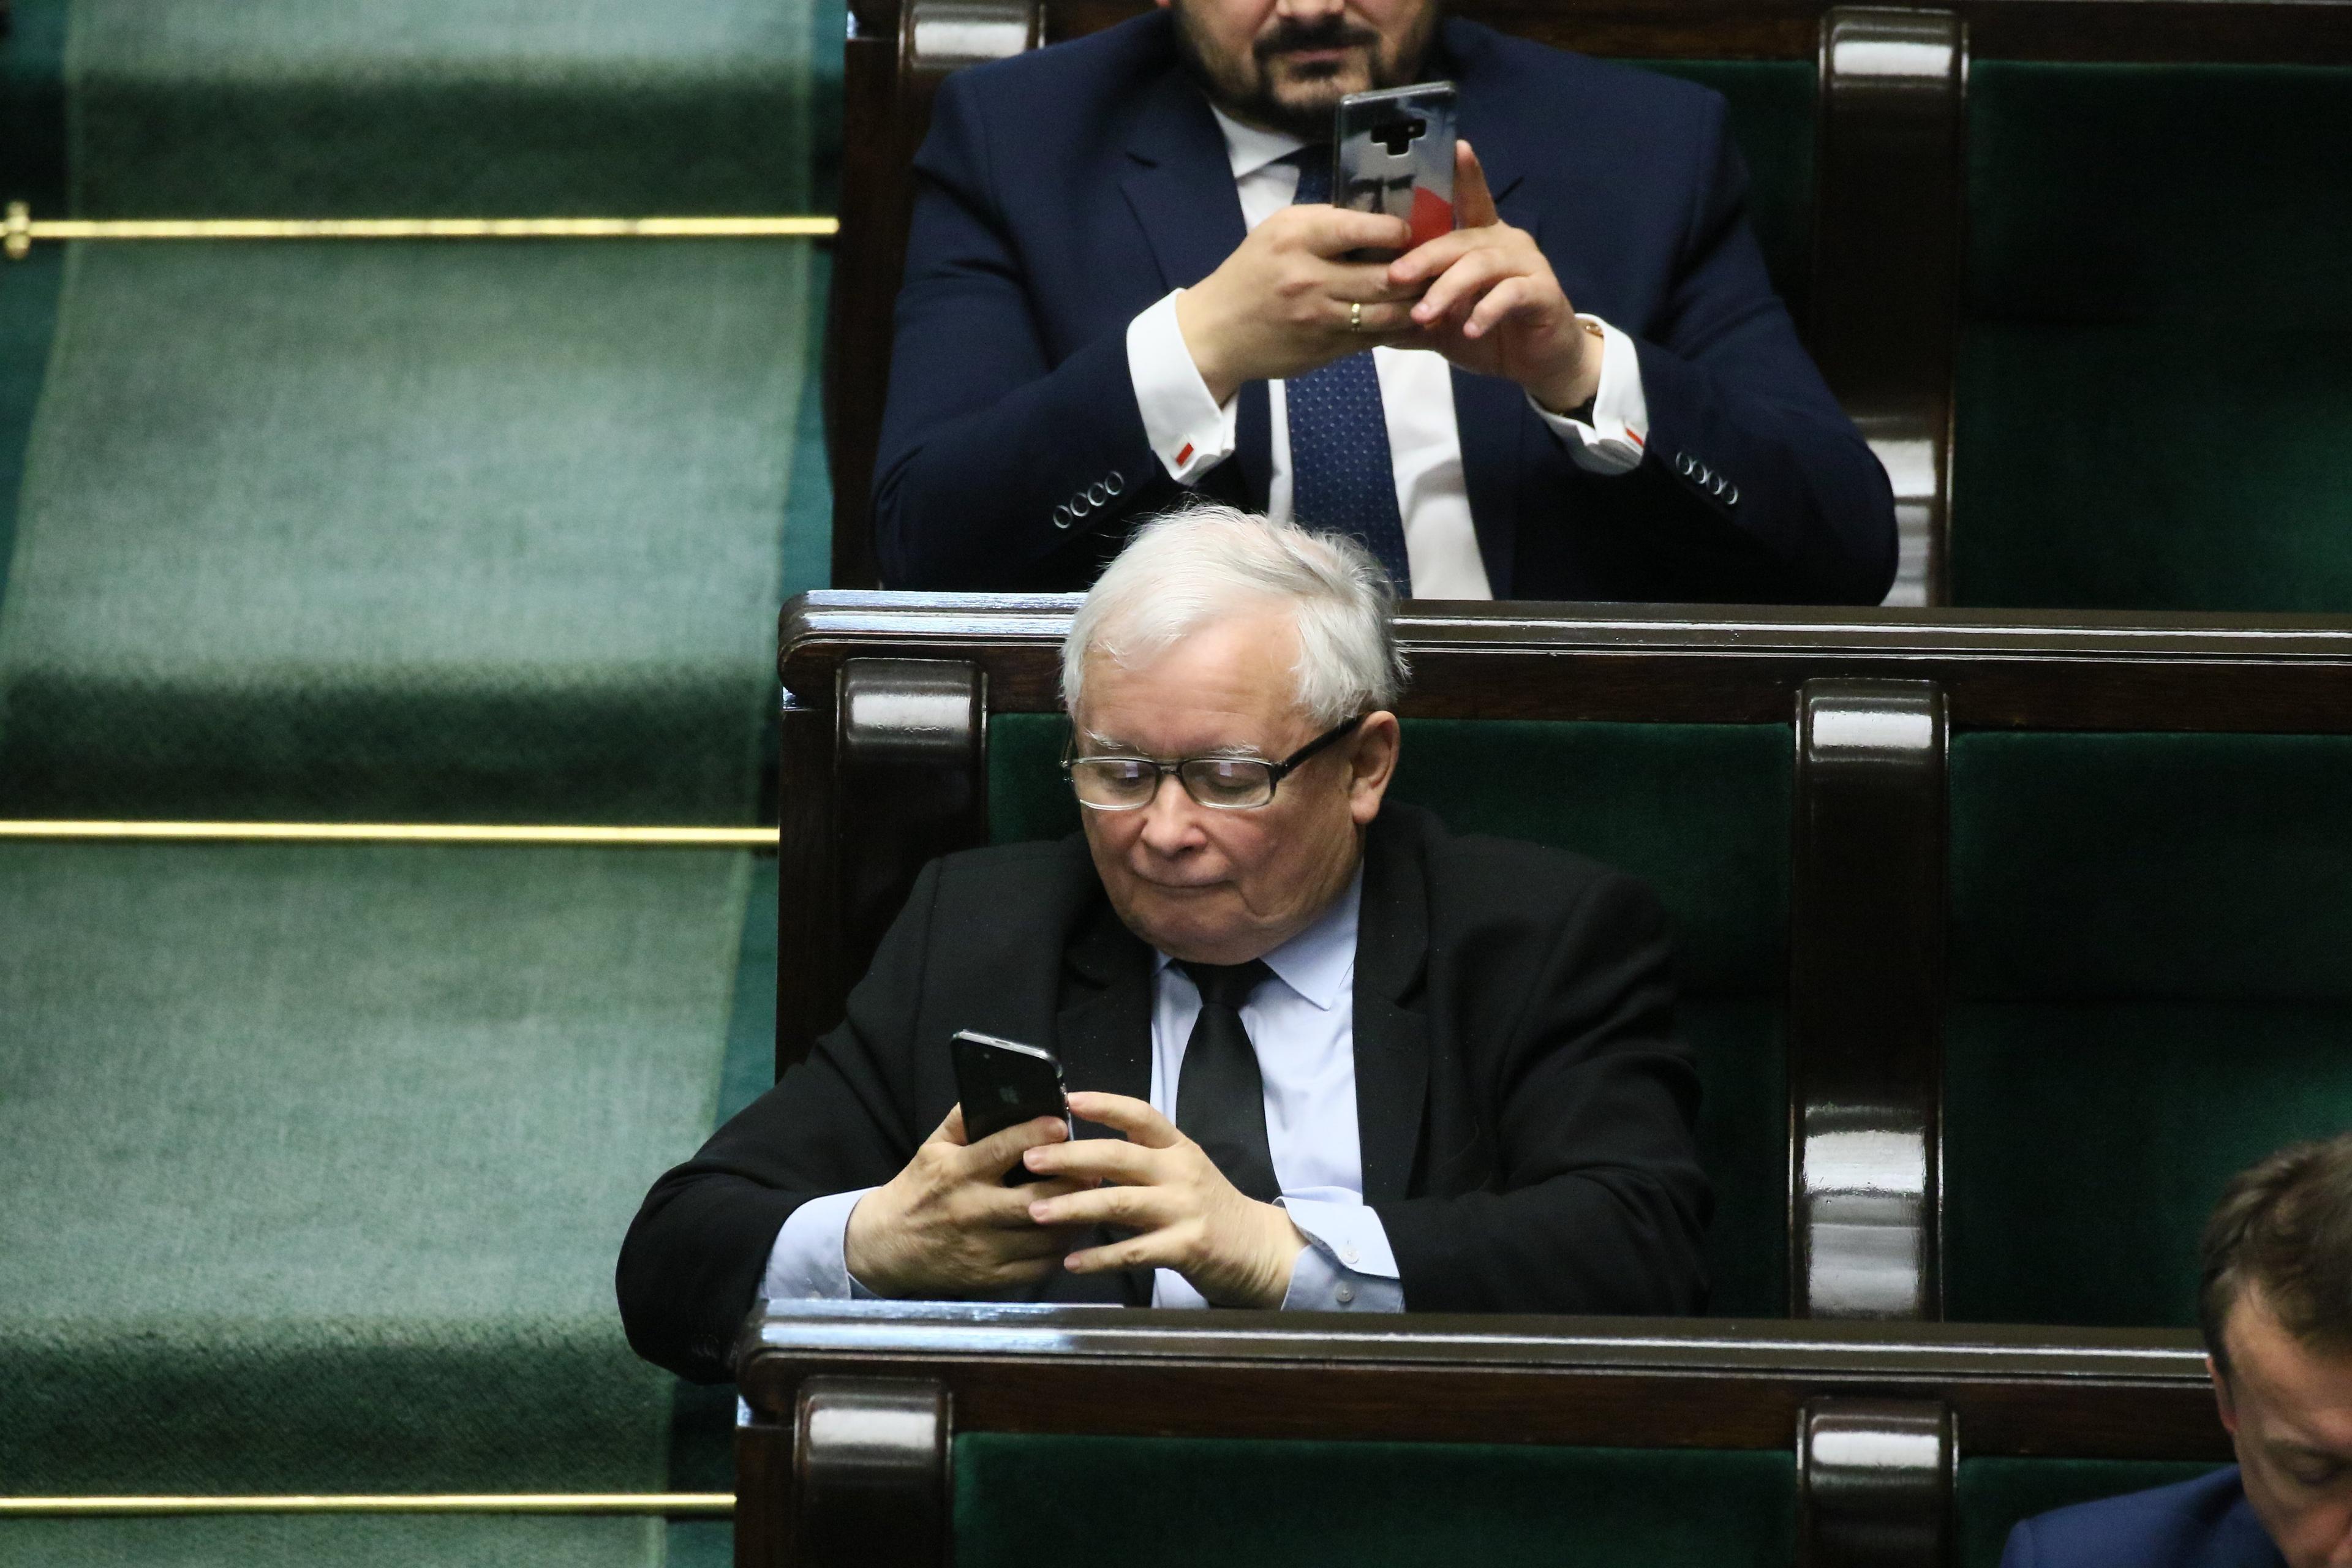 Jarosław kaczyński w ławie sejmowej odczytuje wiadomość w telefonie